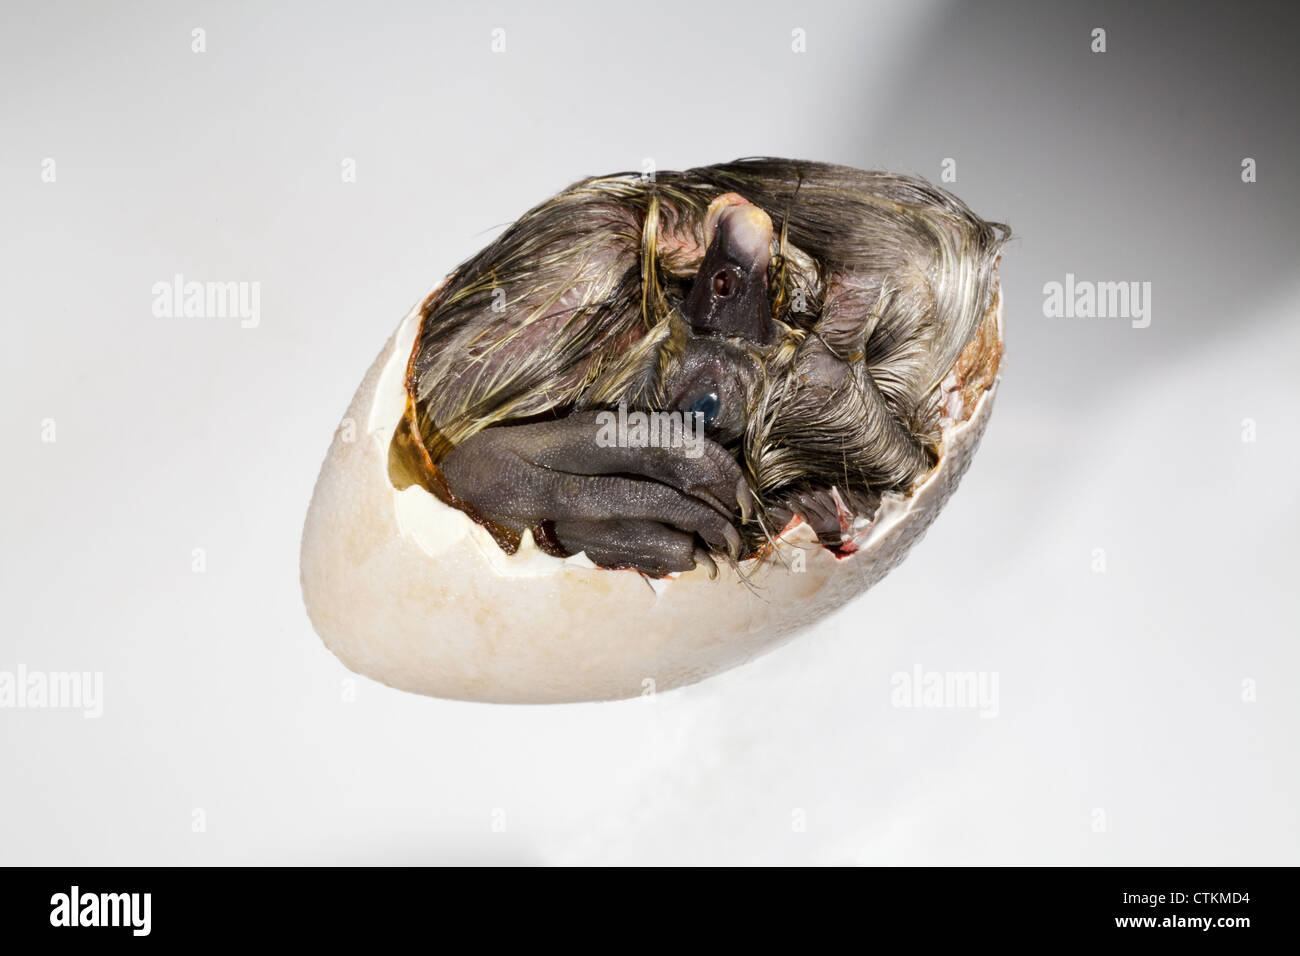 Anatra (Anas platyrhynchos); anatroccolo ancora nel guscio dell'uovo, sezione rimossa. Conosciuta come 'Dead in shell', da aviculturists. Foto Stock